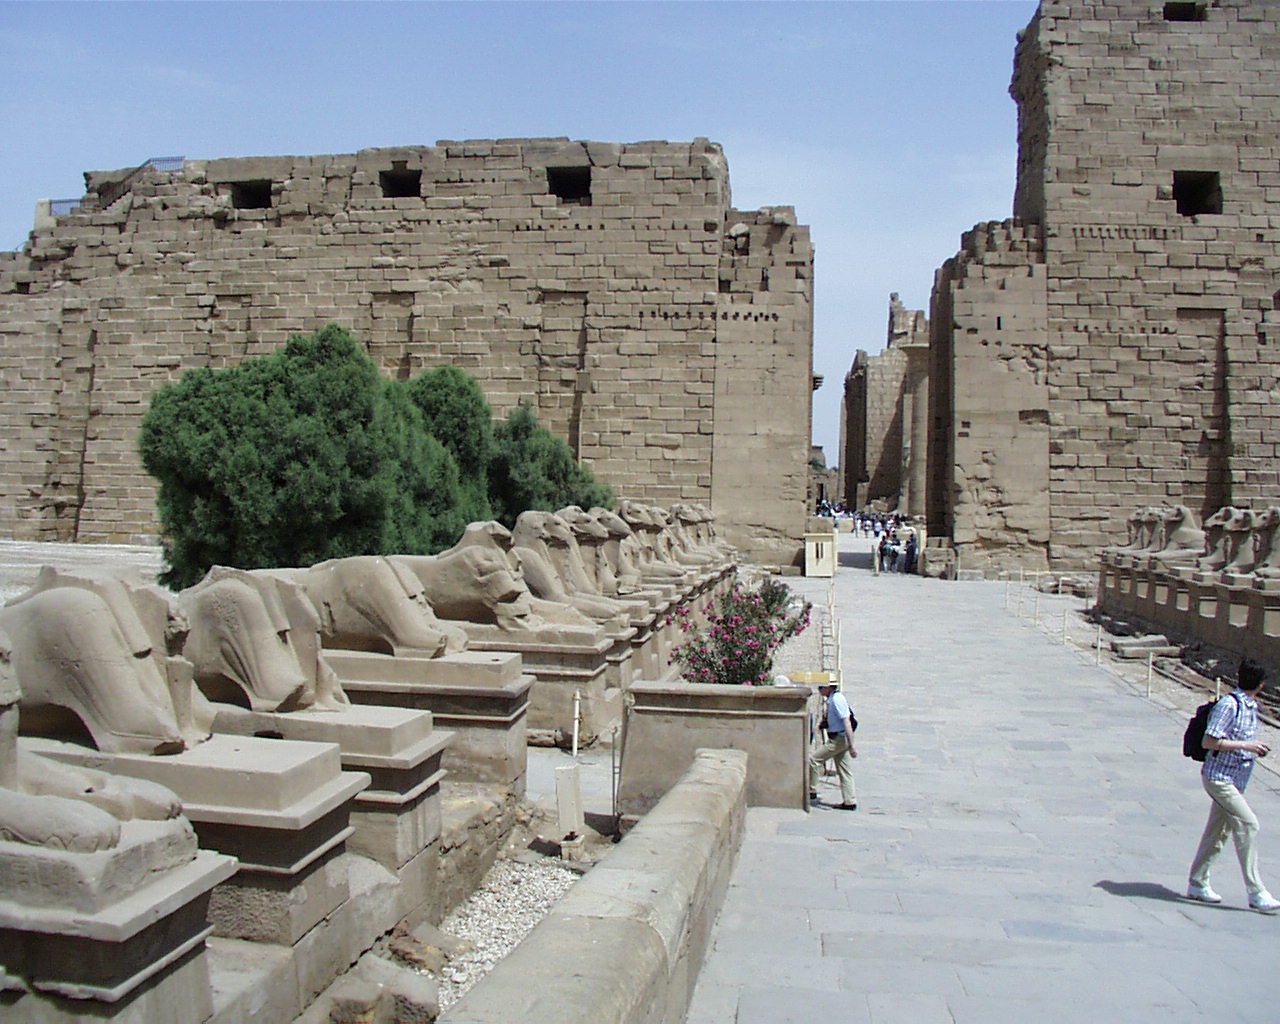 عفروتو: صور المعالم السياحية في الاقصر - صور السياحة بالاقصر - صور زوار مصر